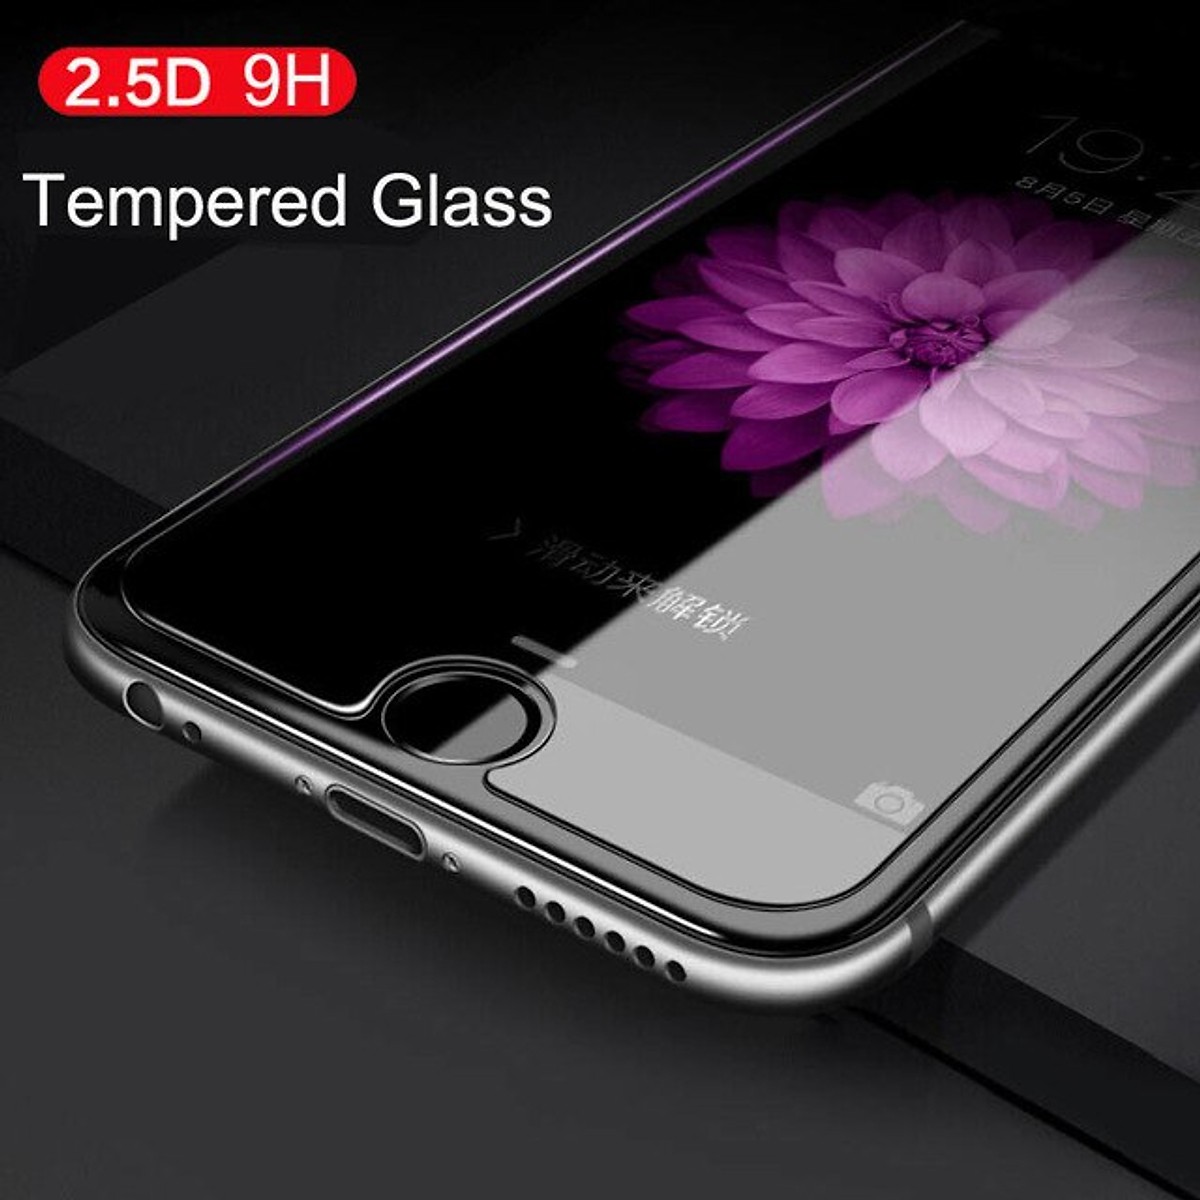 Miếng dán kính cường lực Mercury H+ Pro cho iPhone SE 2020 - iPhone 7 - iPhone 8 - iPhone 6 - 6s - 6 Plus - 6s Plus